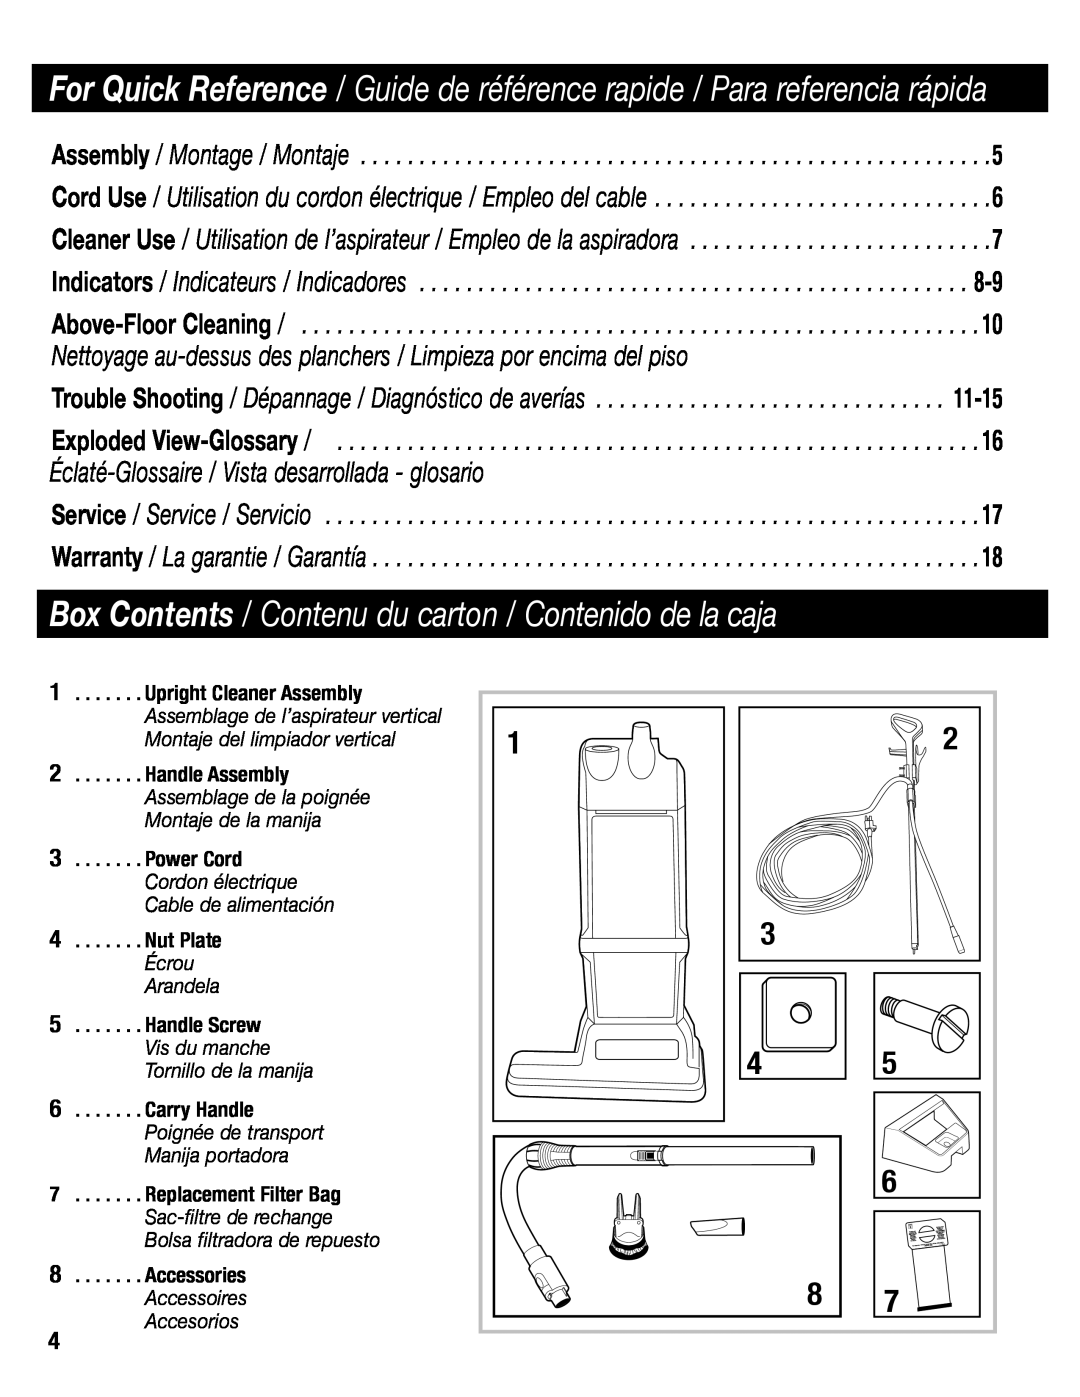 Eureka SC6610 manual Box Contents / Contenu du carton / Contenido de la caja, Accesorios 